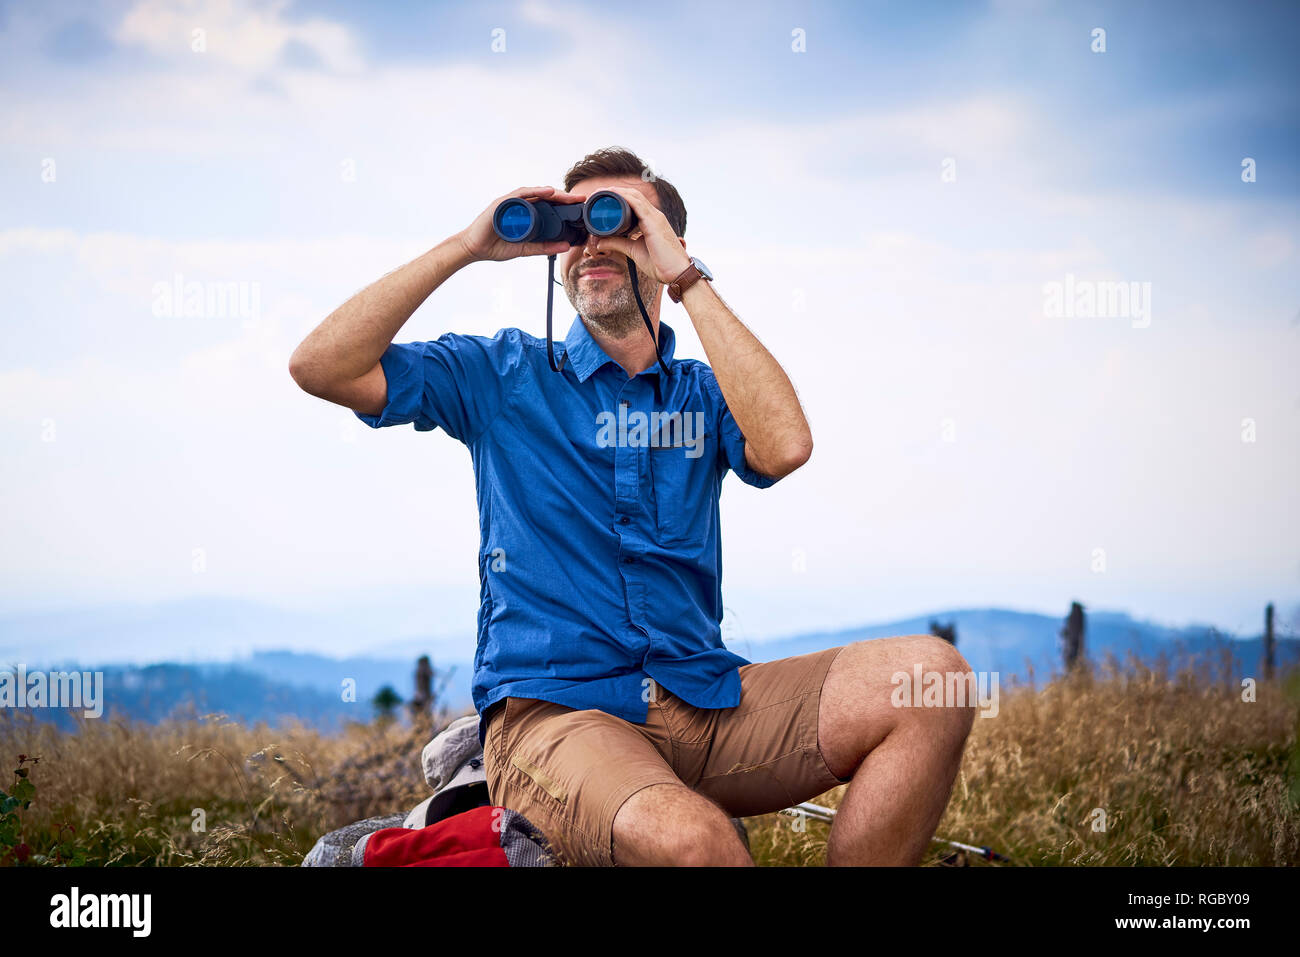 Man looking through binoculars during hiking trip Stock Photo